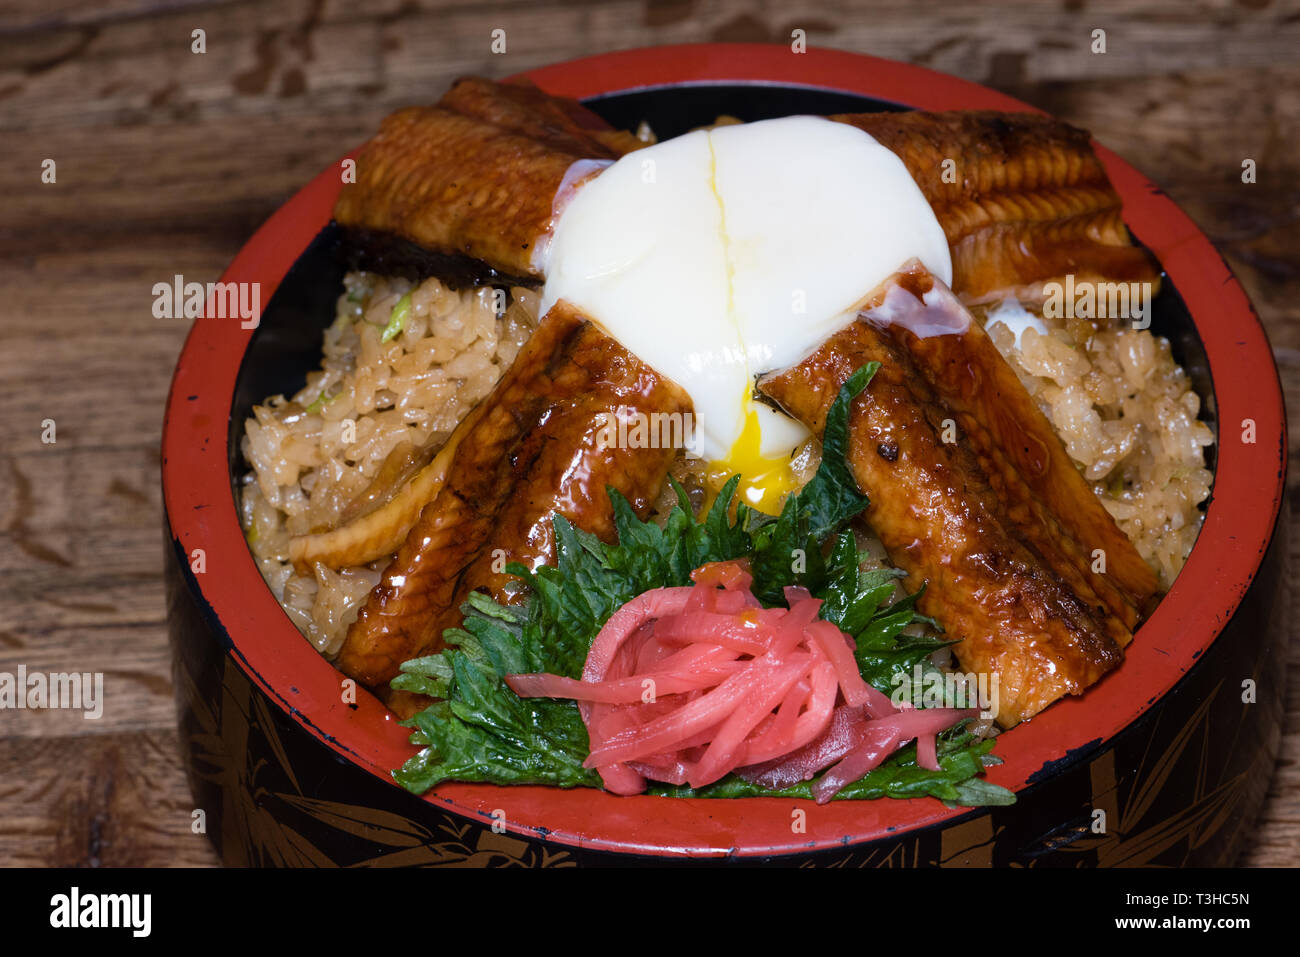 Japanische fusion Teller mit pikanter Reis mit tamari Sauce, gebratener Aal, Ei und rote Rübe, in einer verzierten Schüssel, dunkles Holz Tisch Hintergrund Stockfoto